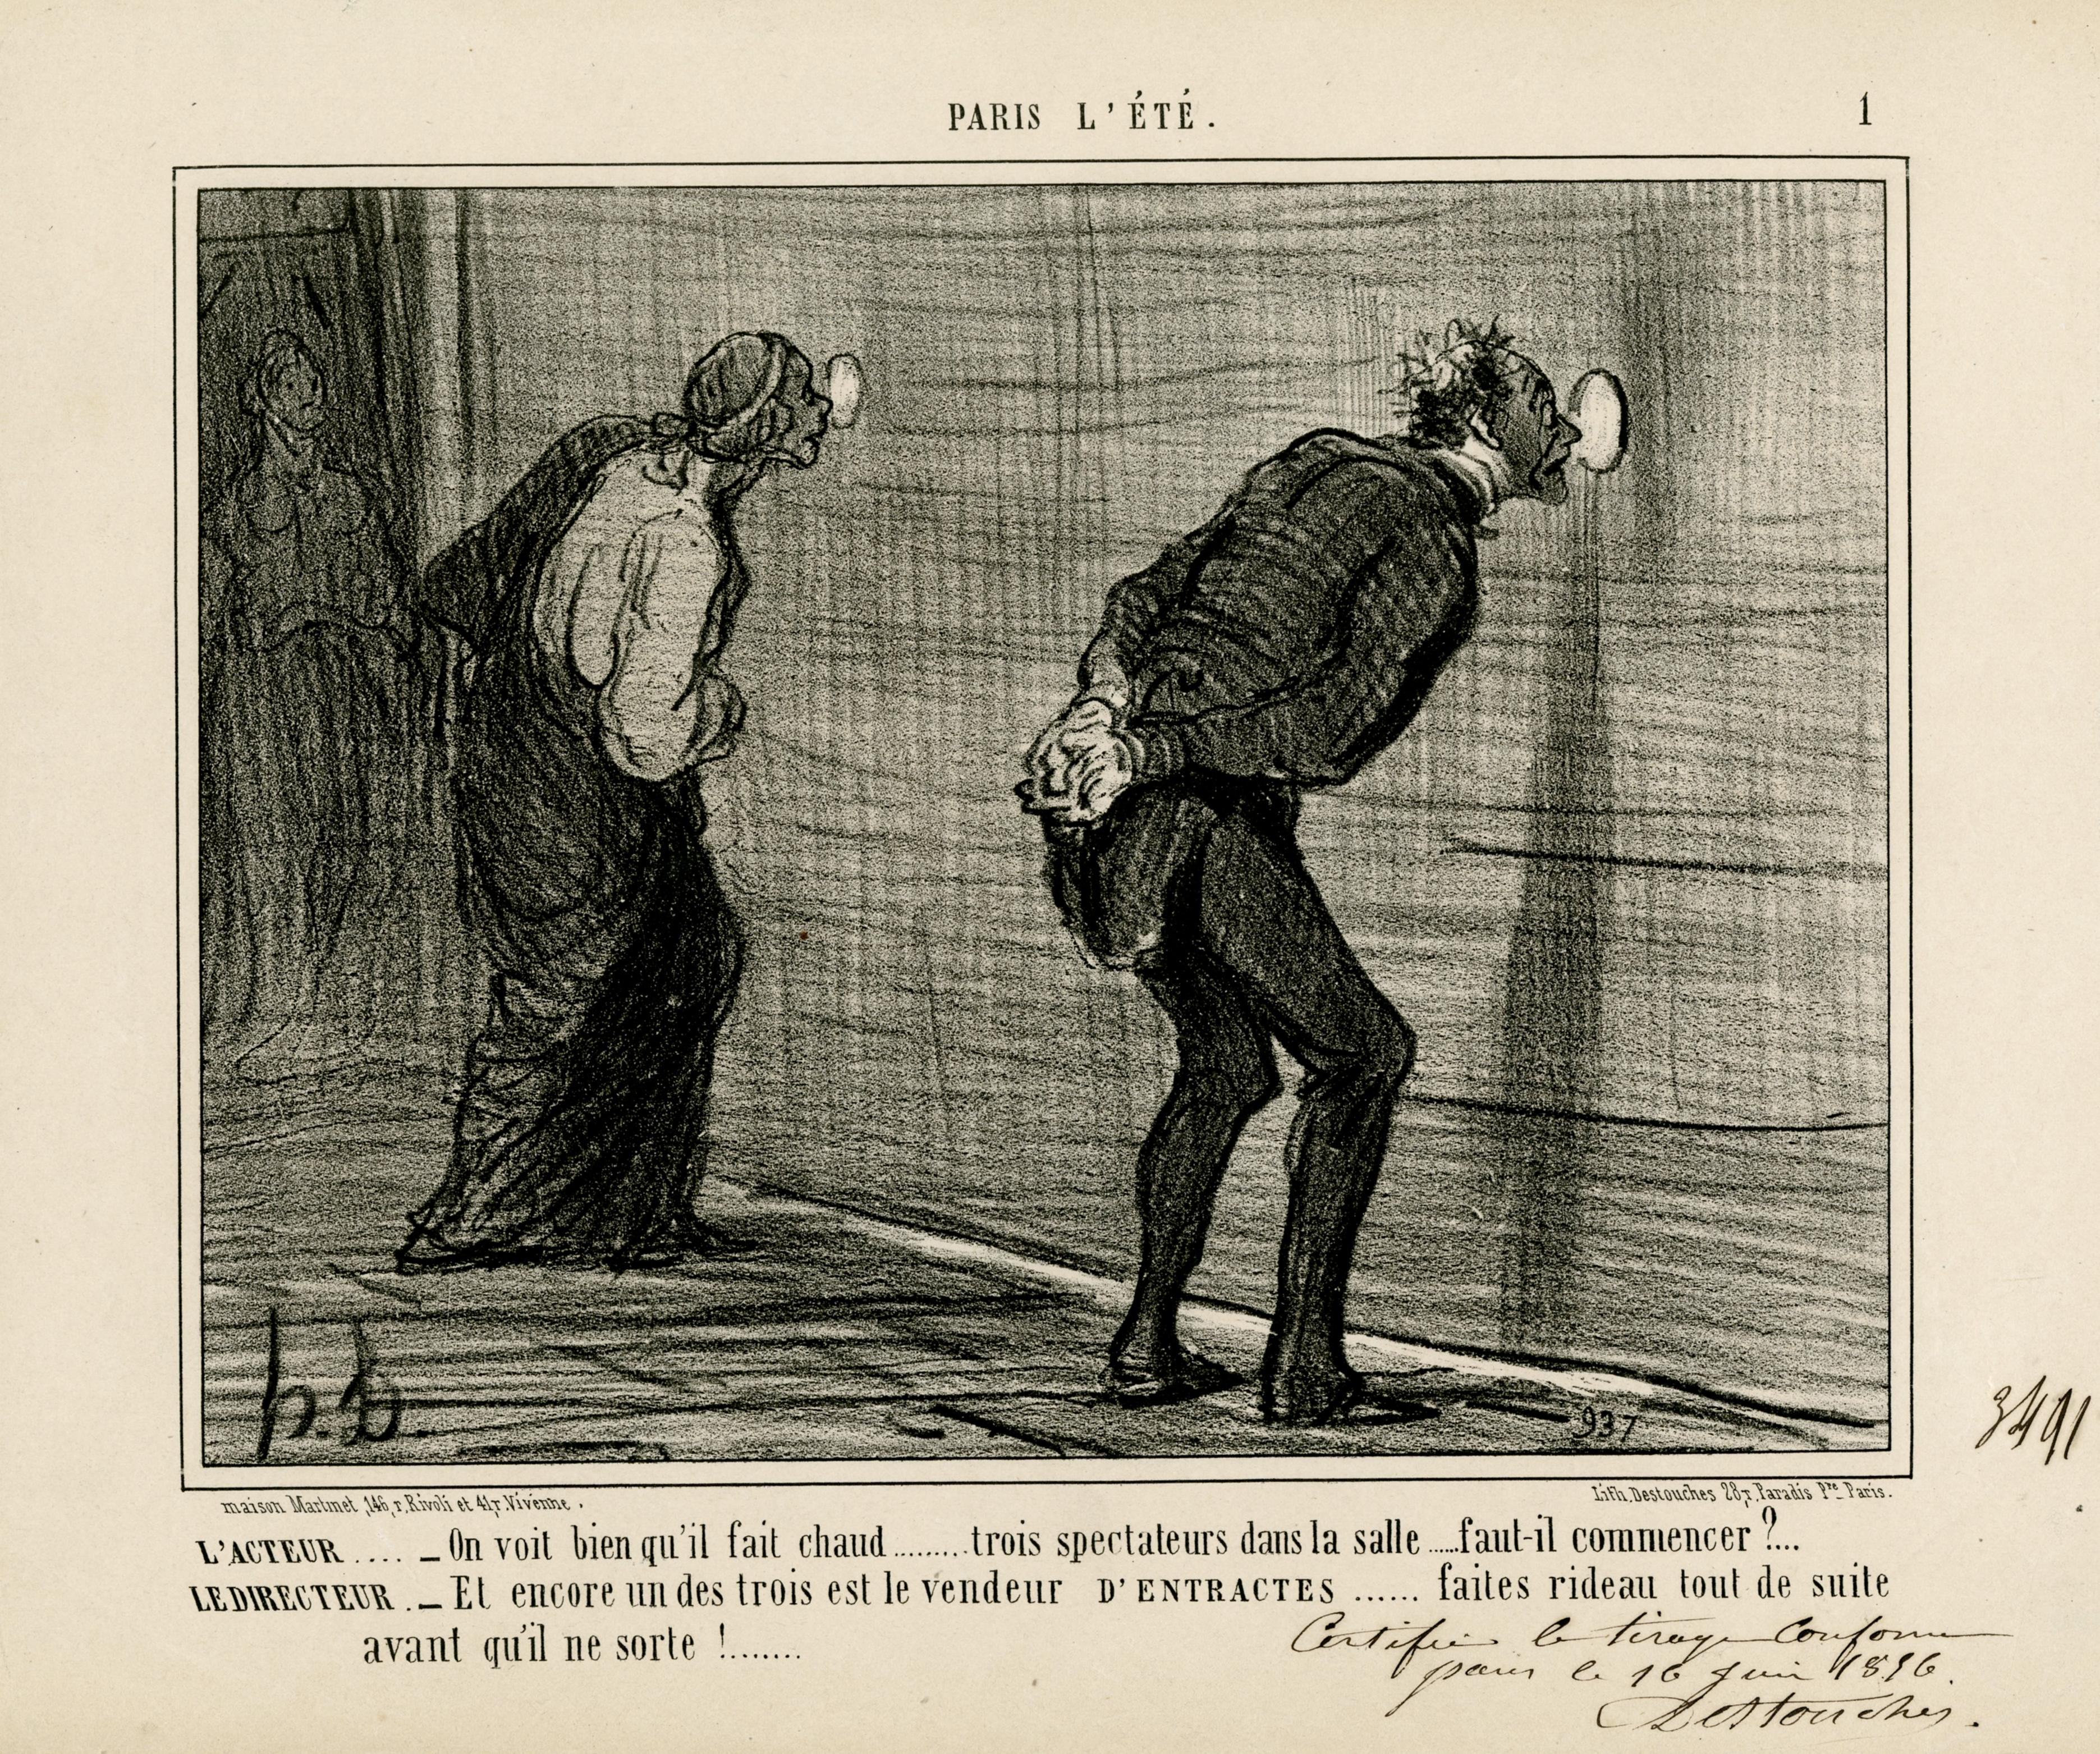 Honoré Daumier Figurative Print – L'ACTEUR . . . - On voit bien qu'il fait chaud . drei Zuschauer